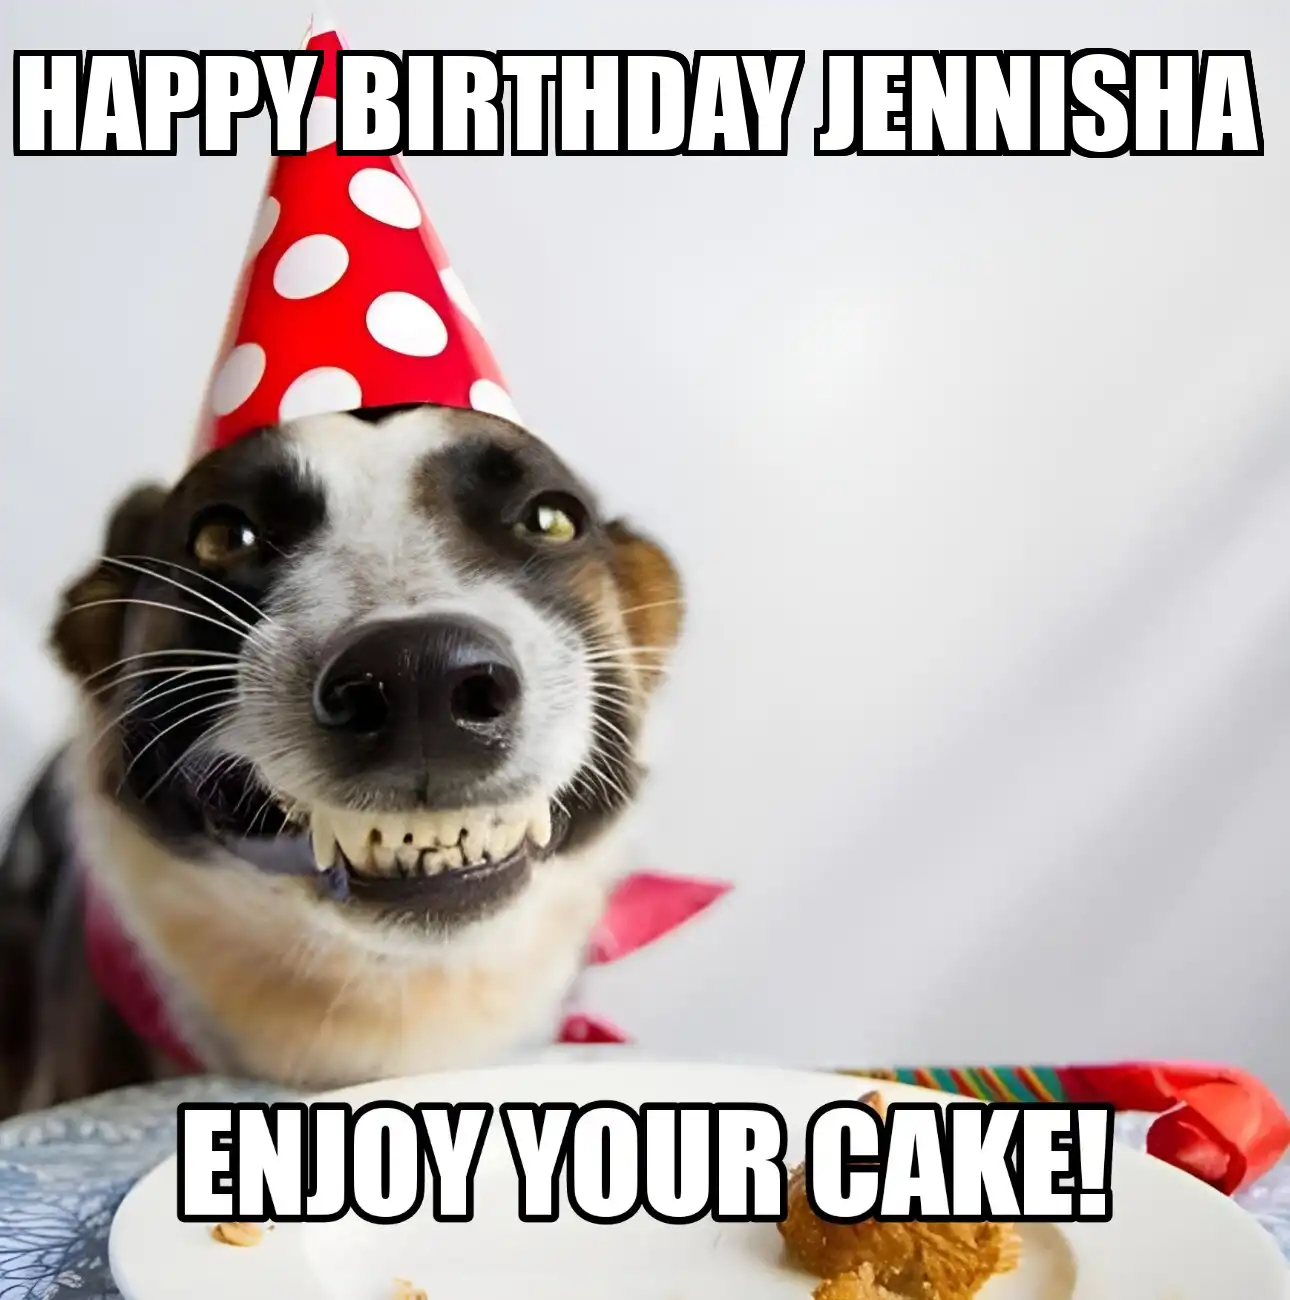 Happy Birthday Jennisha Enjoy Your Cake Dog Meme